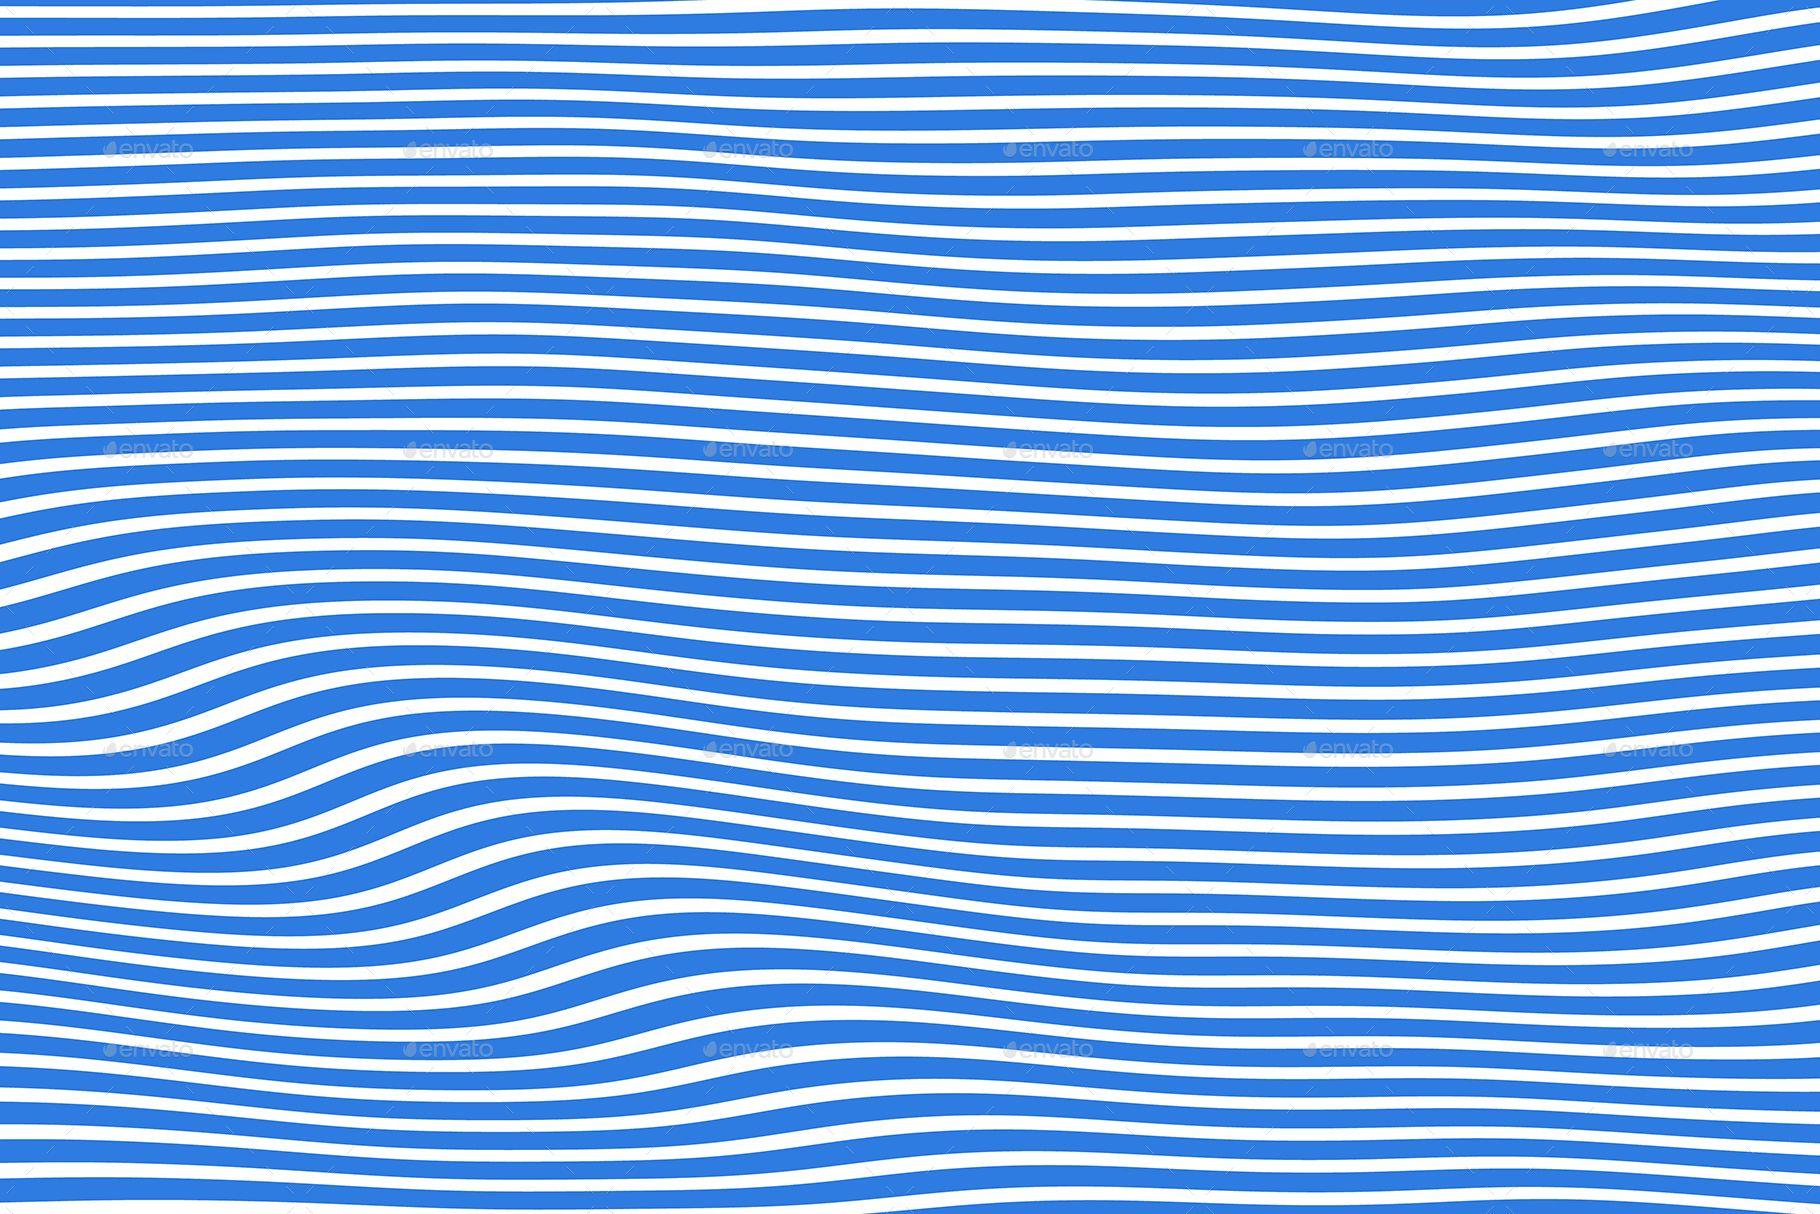 Hypnotic Wave Background